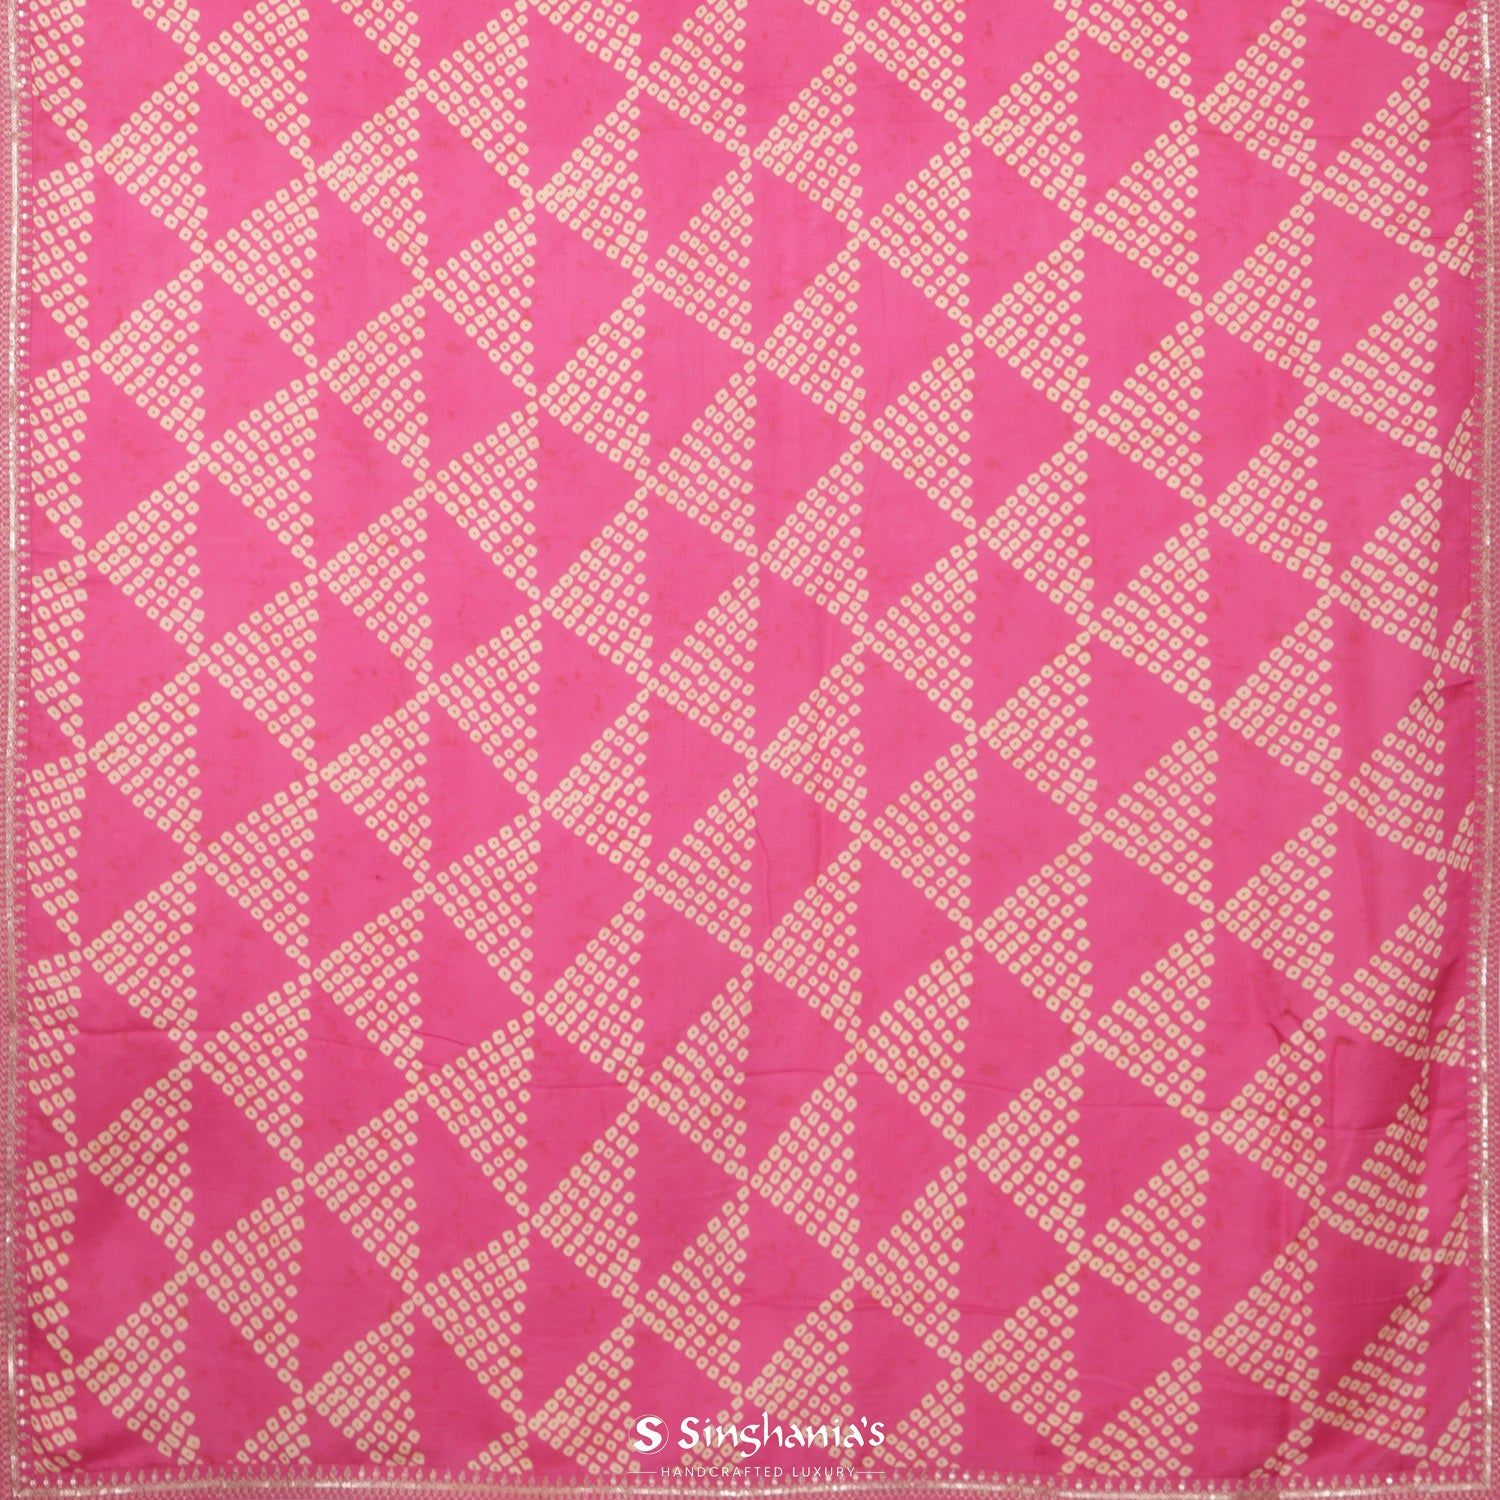 Dark Pink Printed Silk Saree With Bandhani Pattern